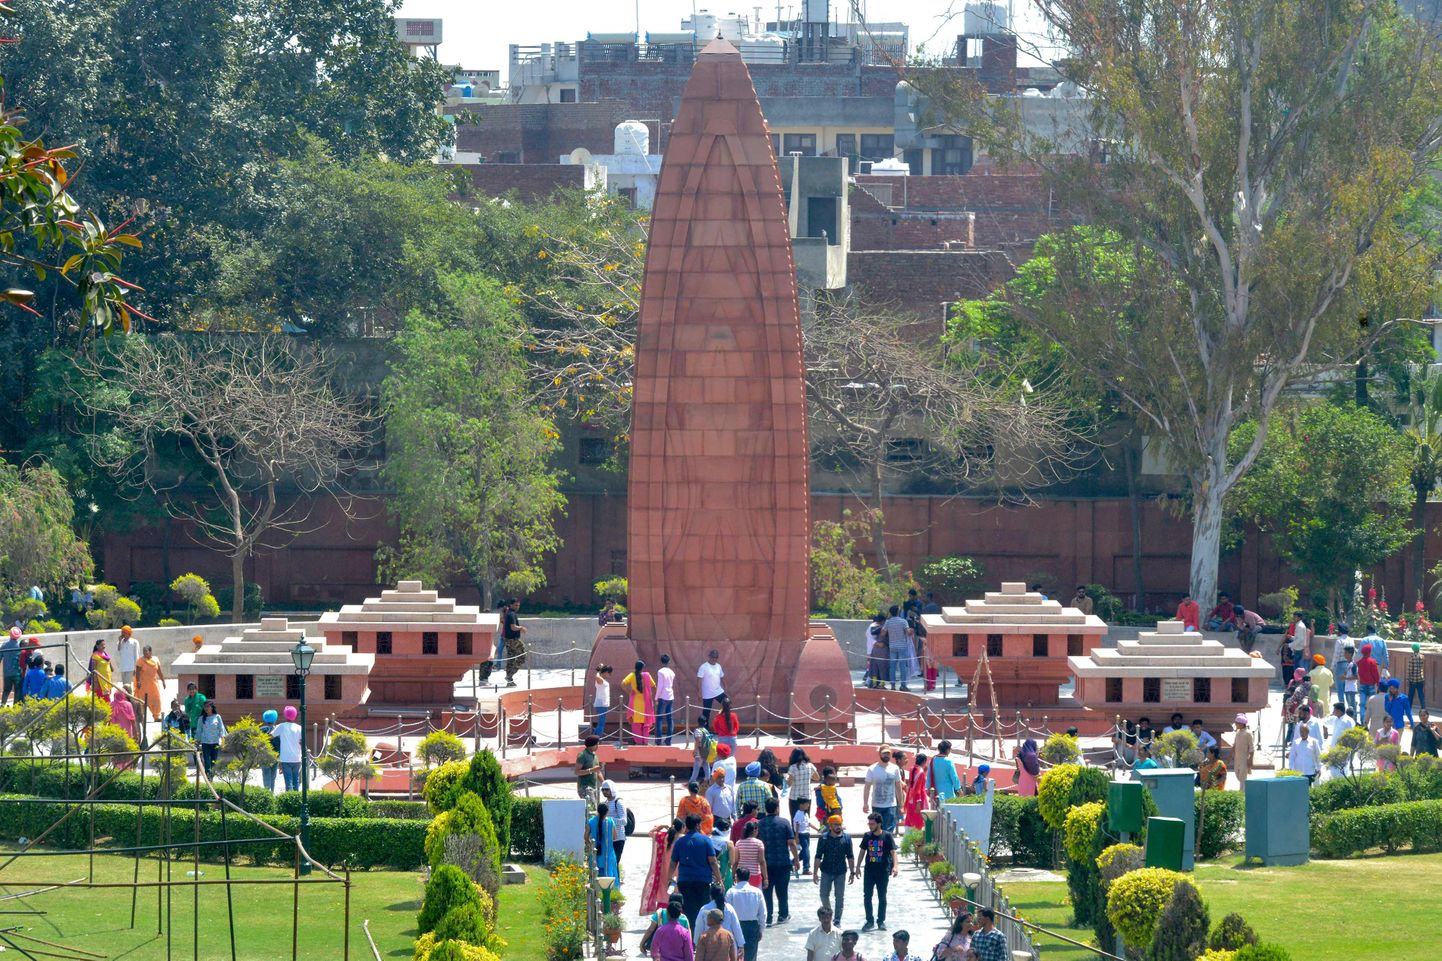 Amritsari massimõrvas hukkunute mälestusmärk Indias.